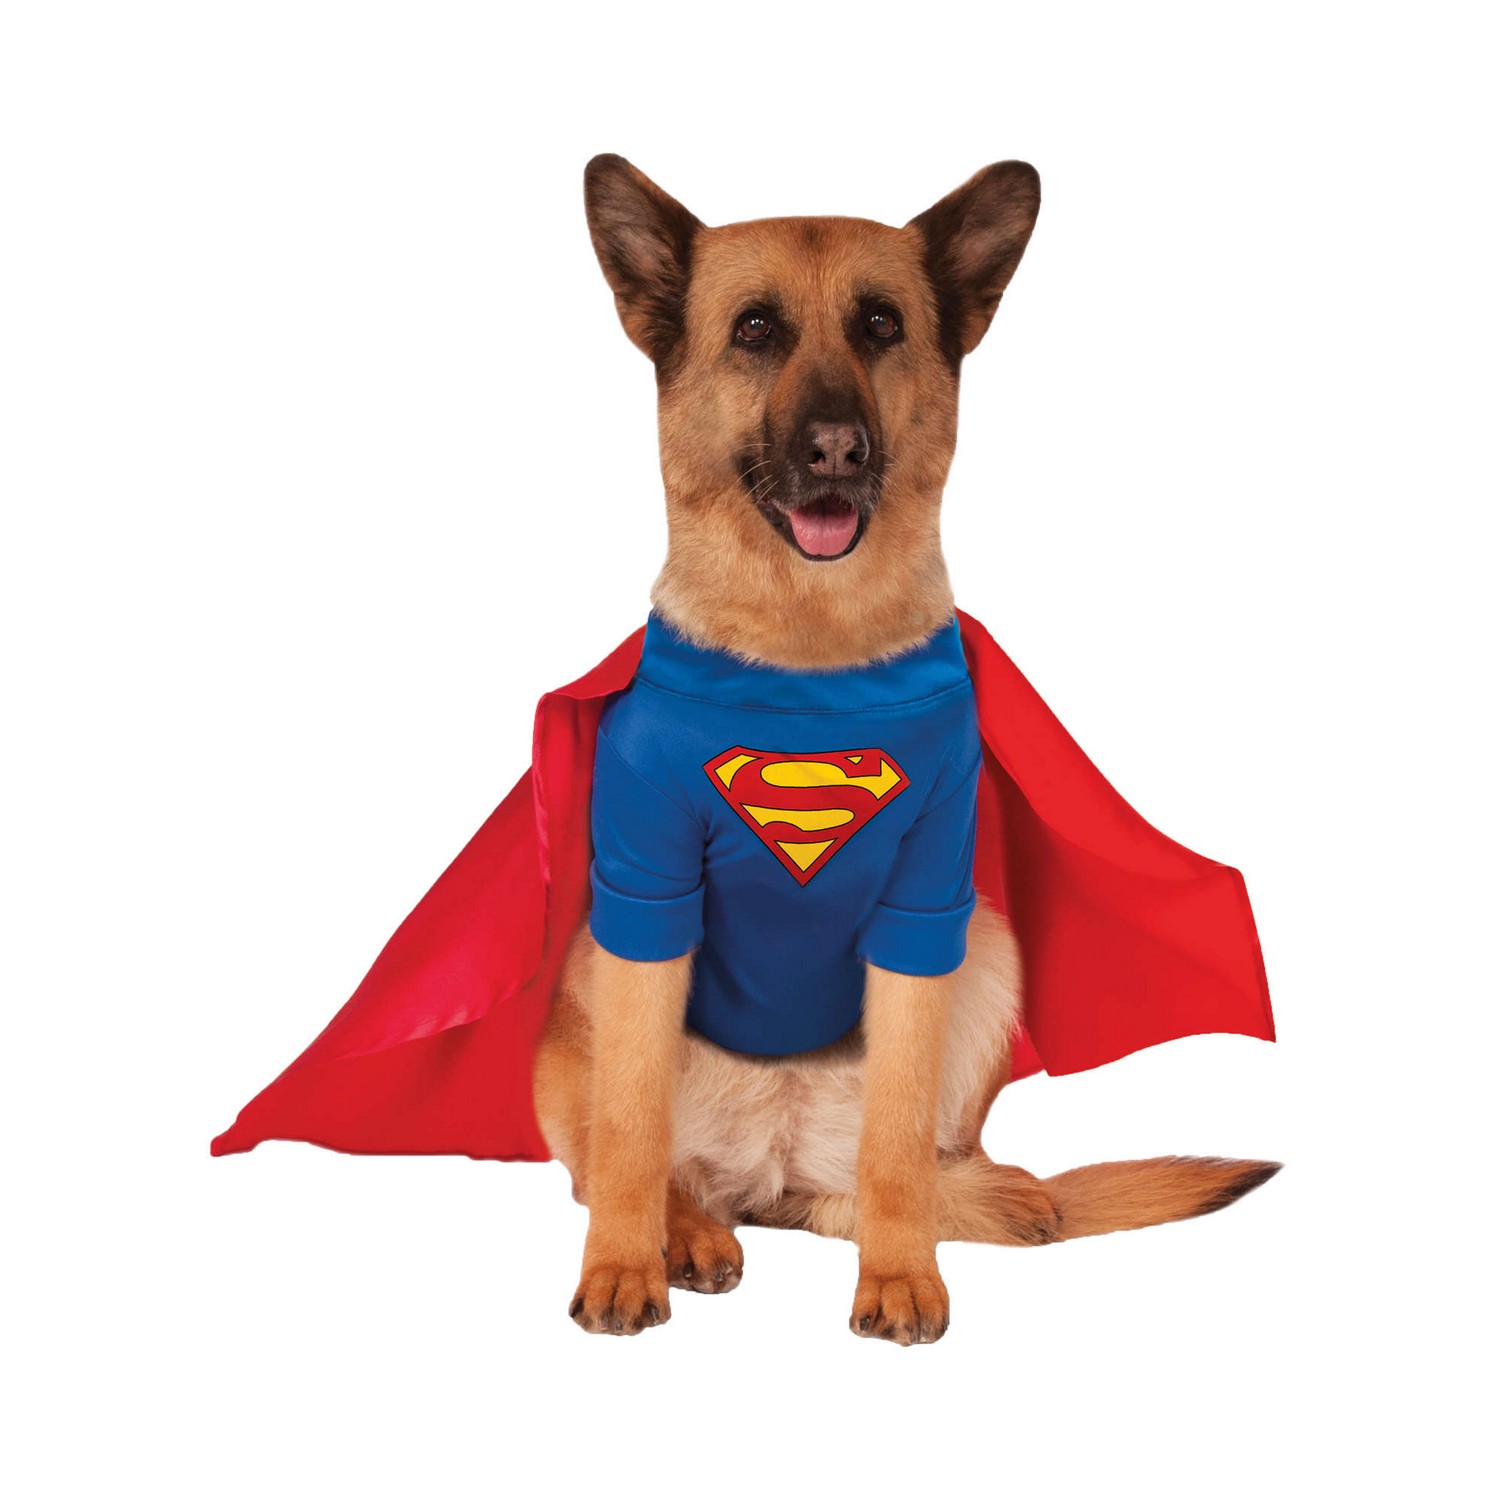 (スーパーマン) Superman オフィシャル商品 ワンちゃん用 コスチューム 犬服 コスプレ ペット用品 【海外通販】